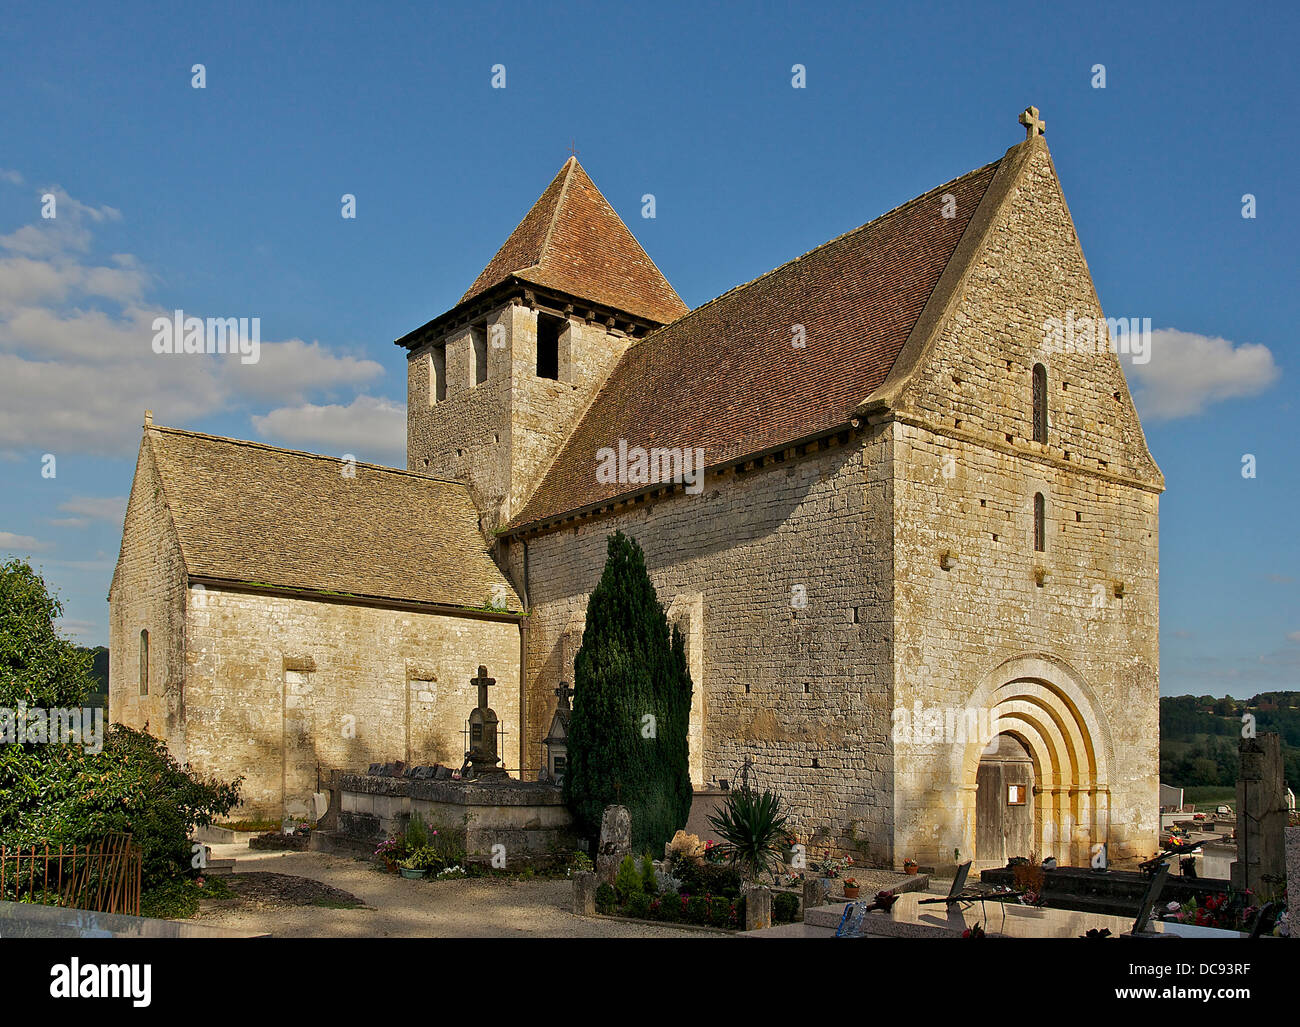 In Limeuil Dordogne, Frankreich Seite dieser romanischen Kirche des 12. Jahrhunderts und 13. & 14. Jahrhundert Kapelle. Dach in Lauze sto Stockfoto